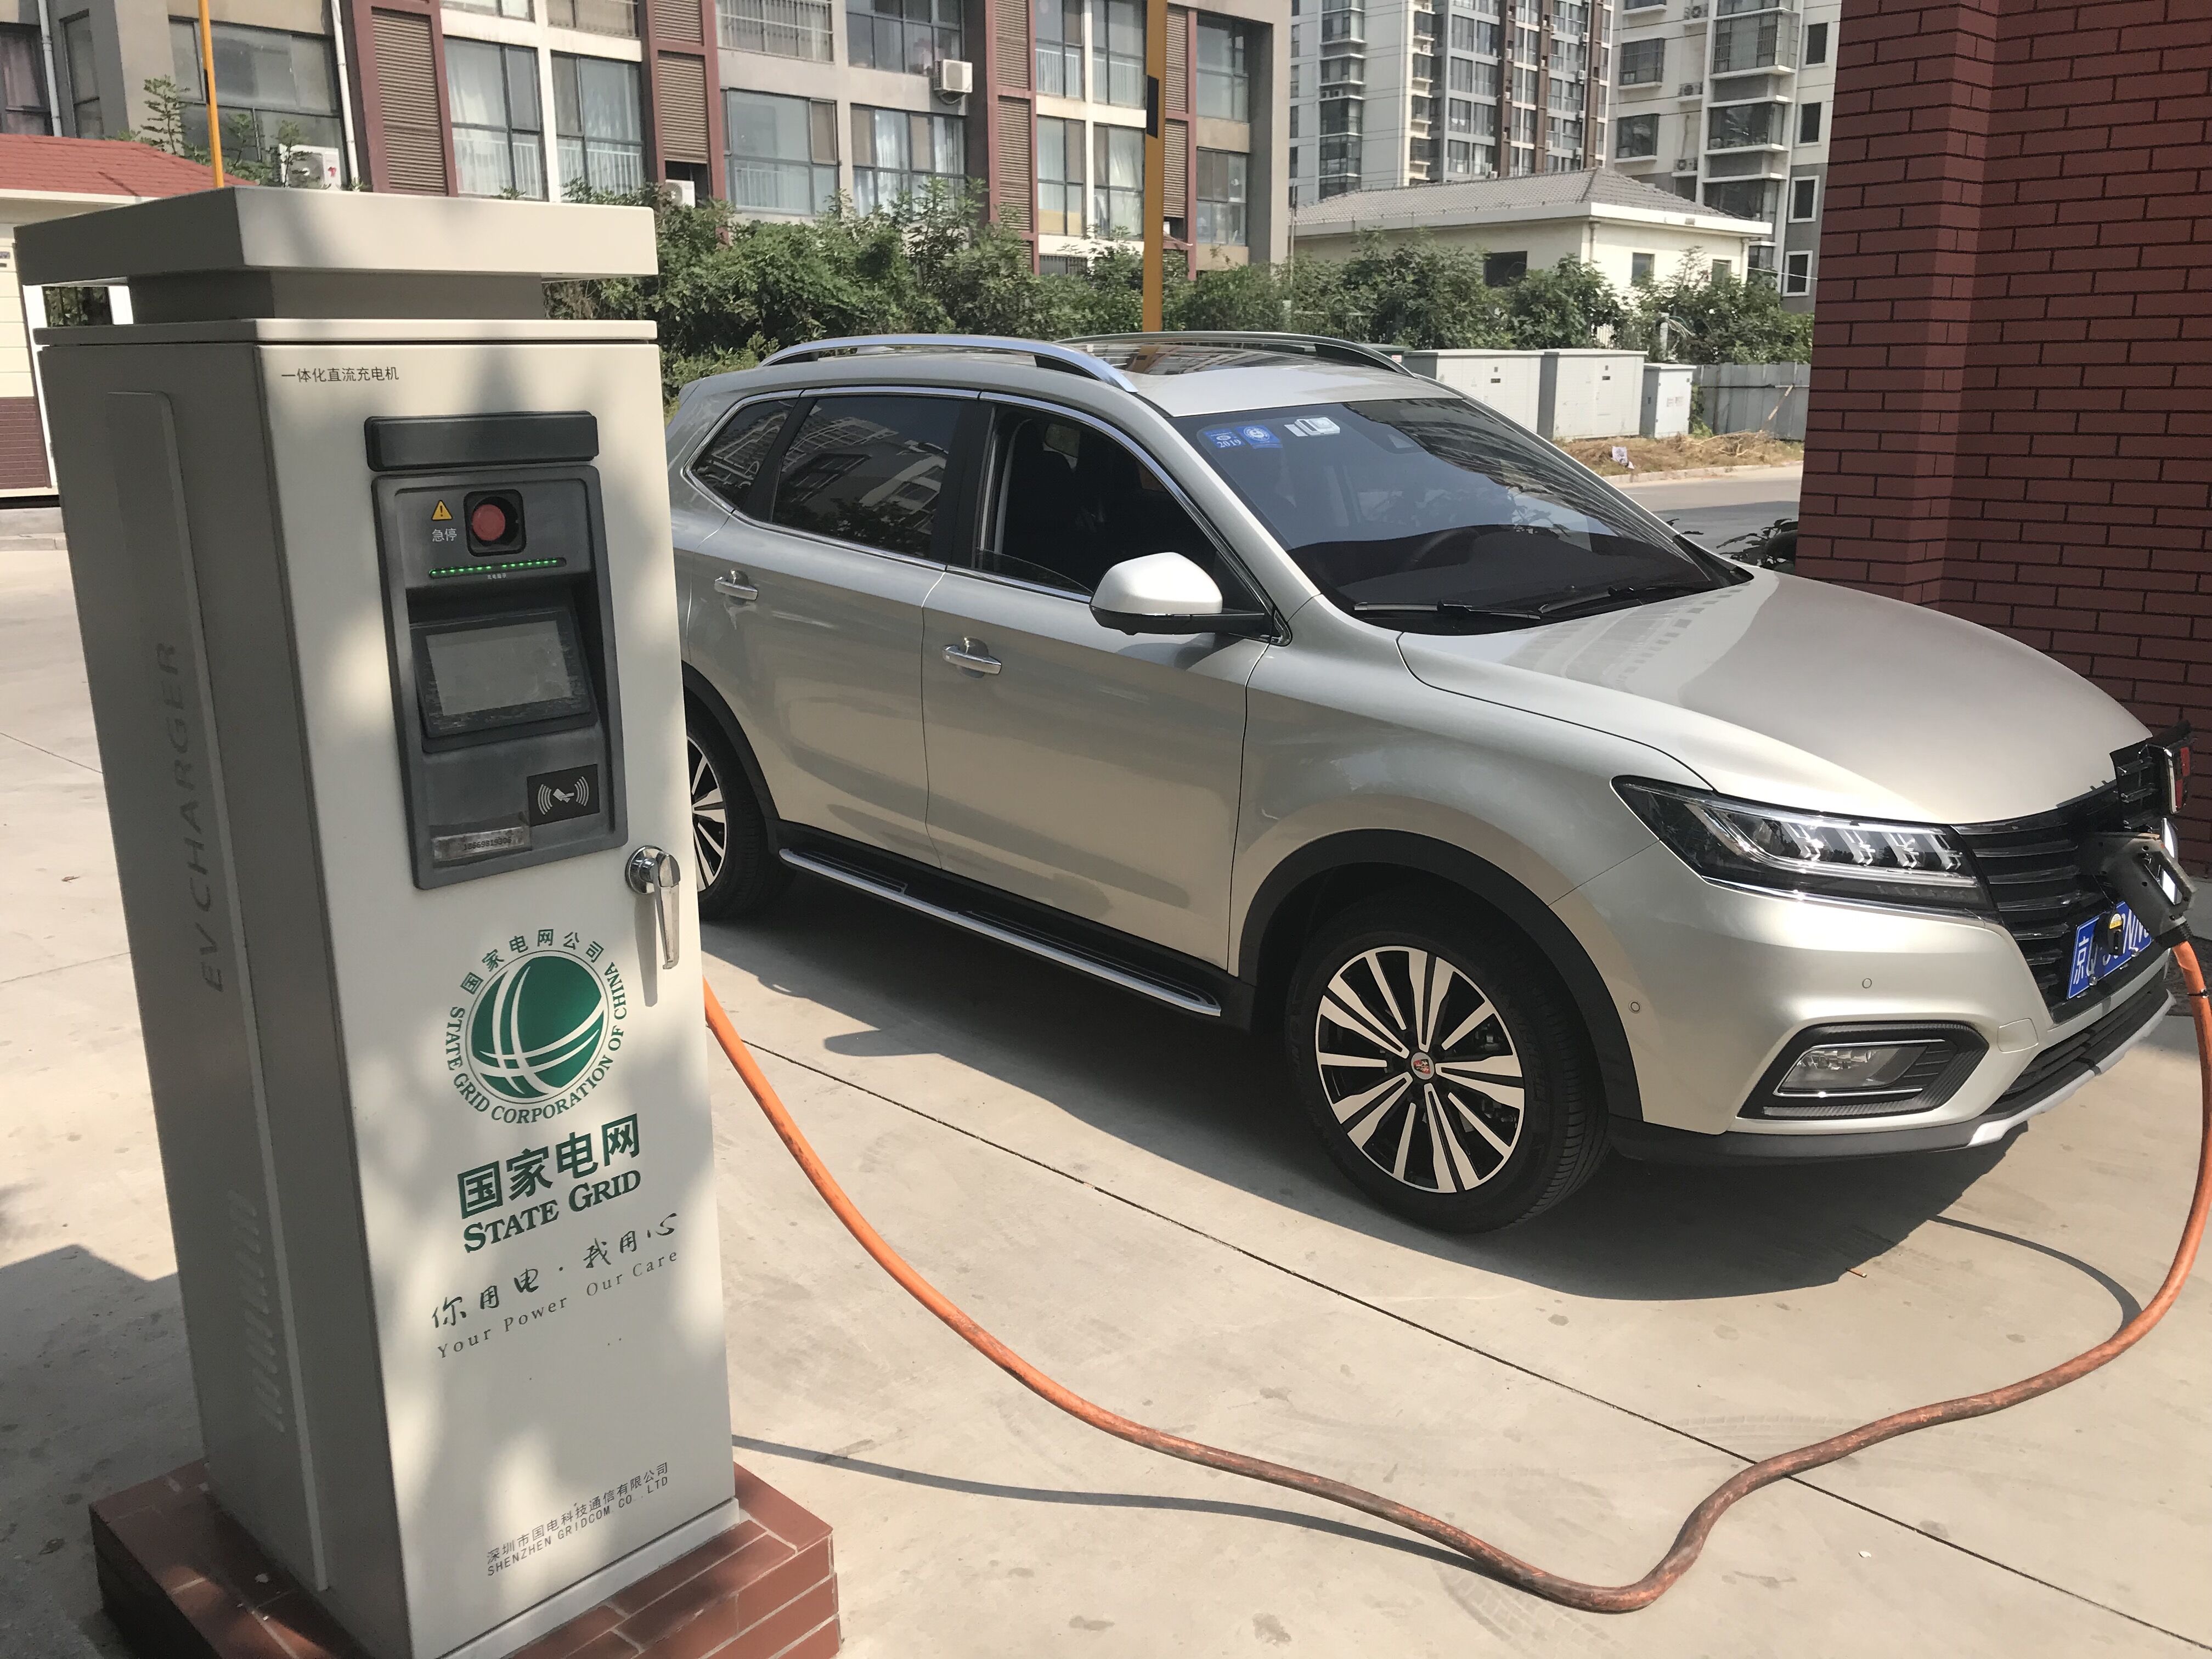 充电设施运营商加速布局 郑州将建5万多个交流充电桩